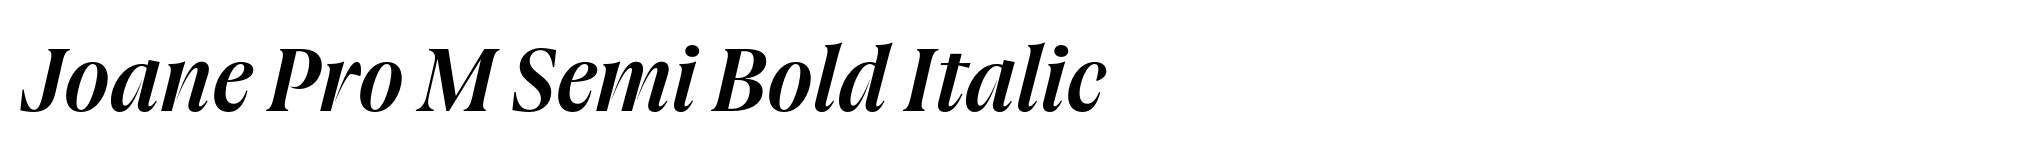 Joane Pro M Semi Bold Italic image